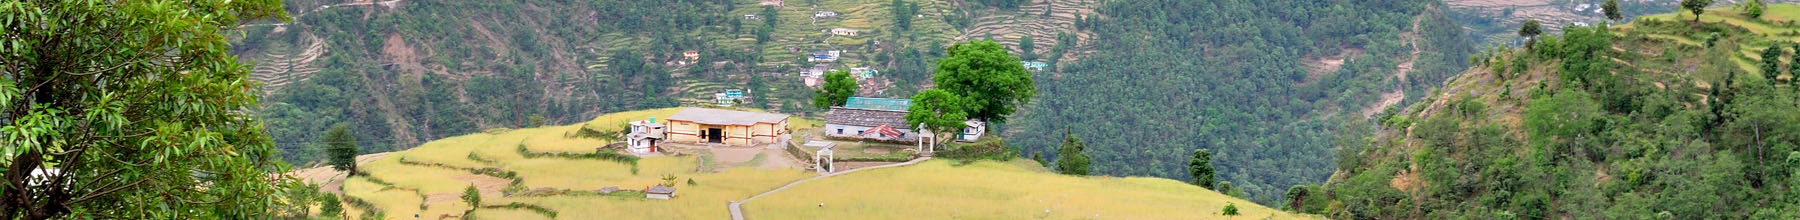 Himalaya-Institute-of-Rural-Awakening